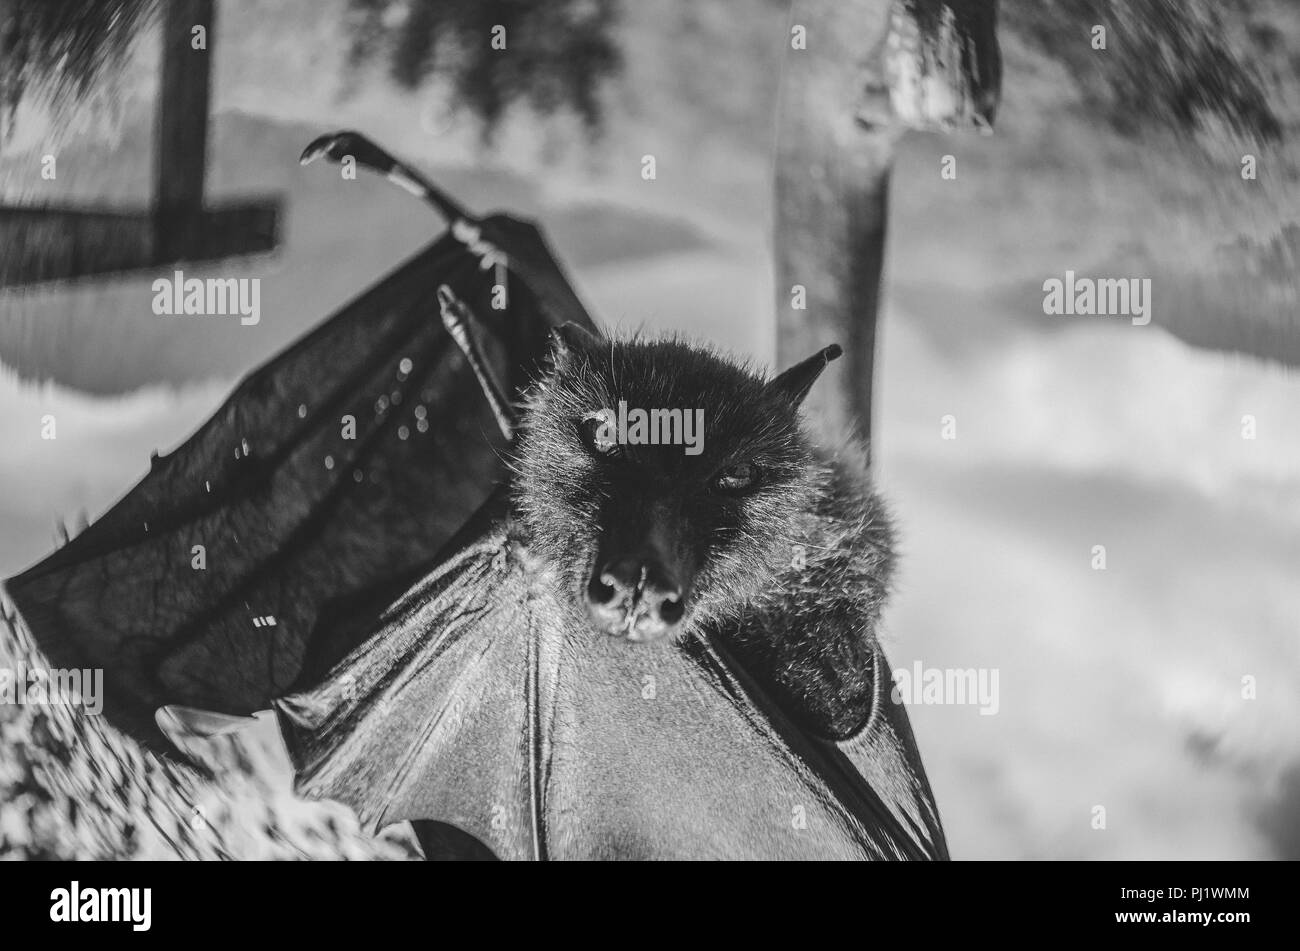 Ritratto in bianco e nero di un gigante di frutta Bat/Flying Fox appeso; in bianco e nero serie di ritratti di frutto di bat o flying fox Foto Stock